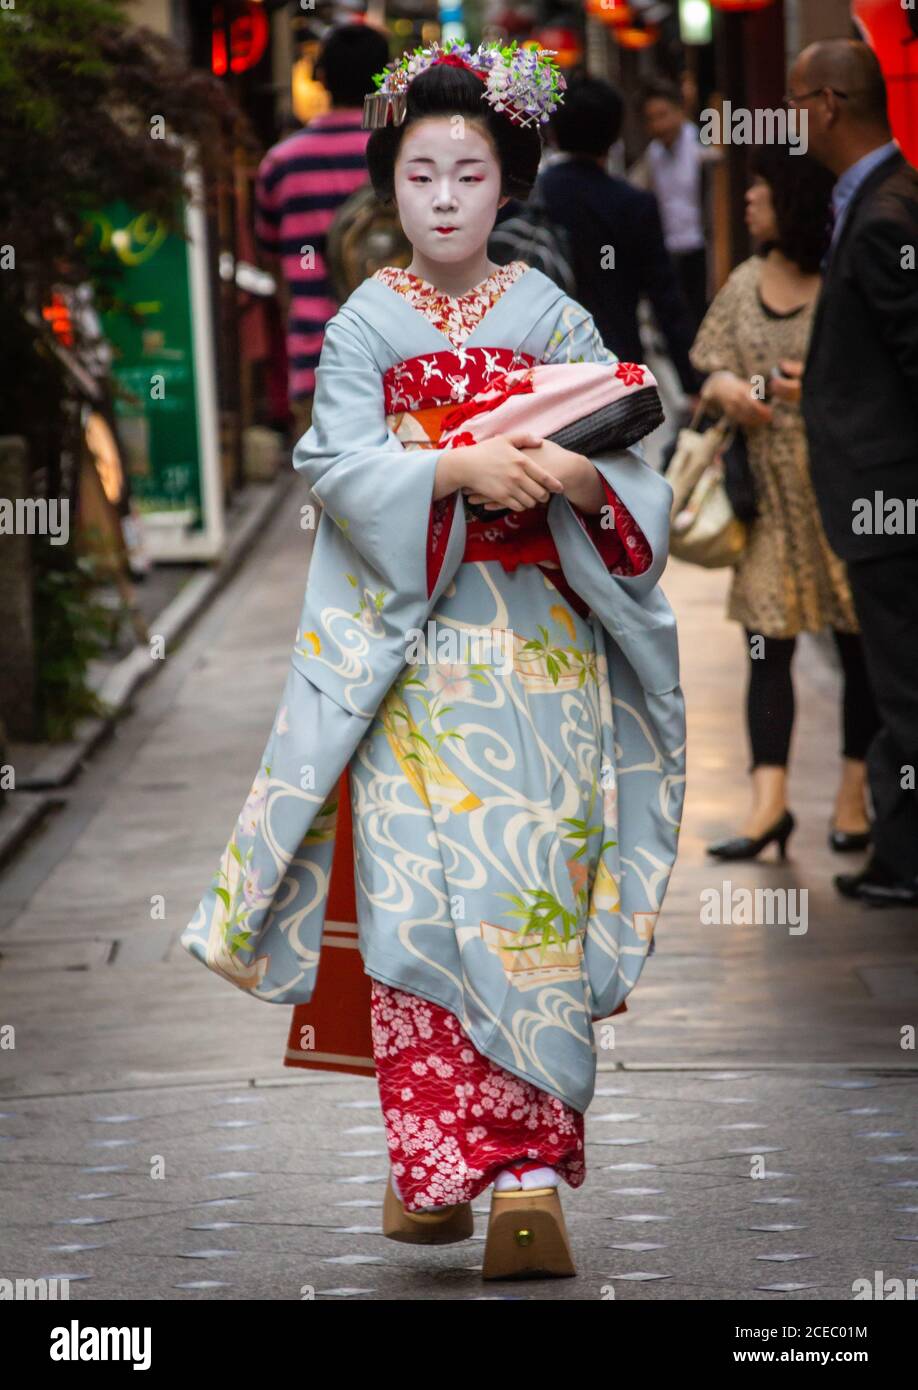 Japan - Mai, 10 2013: Asiatische Frau mit Geisha Make-up tragen traditionelle Kleidung und zu Fuß auf Bürgersteig auf der Stadtstraße Stockfoto